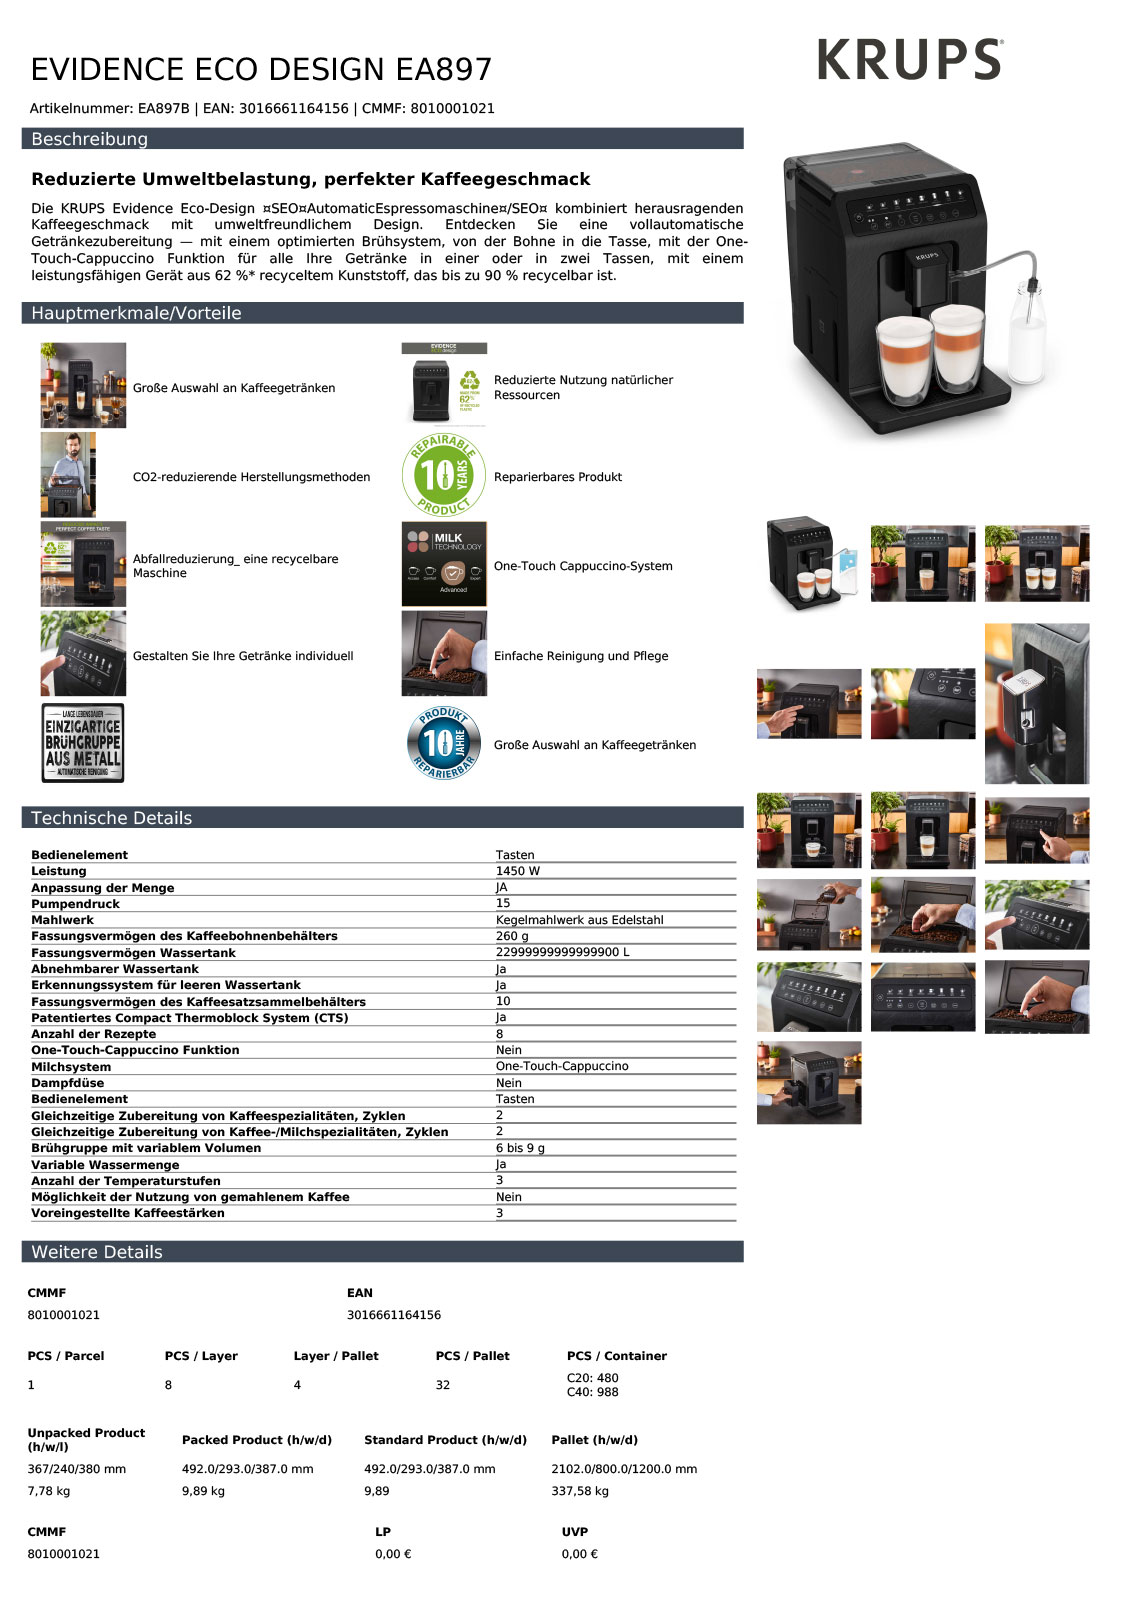 Datenblatt Evidence ECOdesign Kaffeevollautomat von Krups 